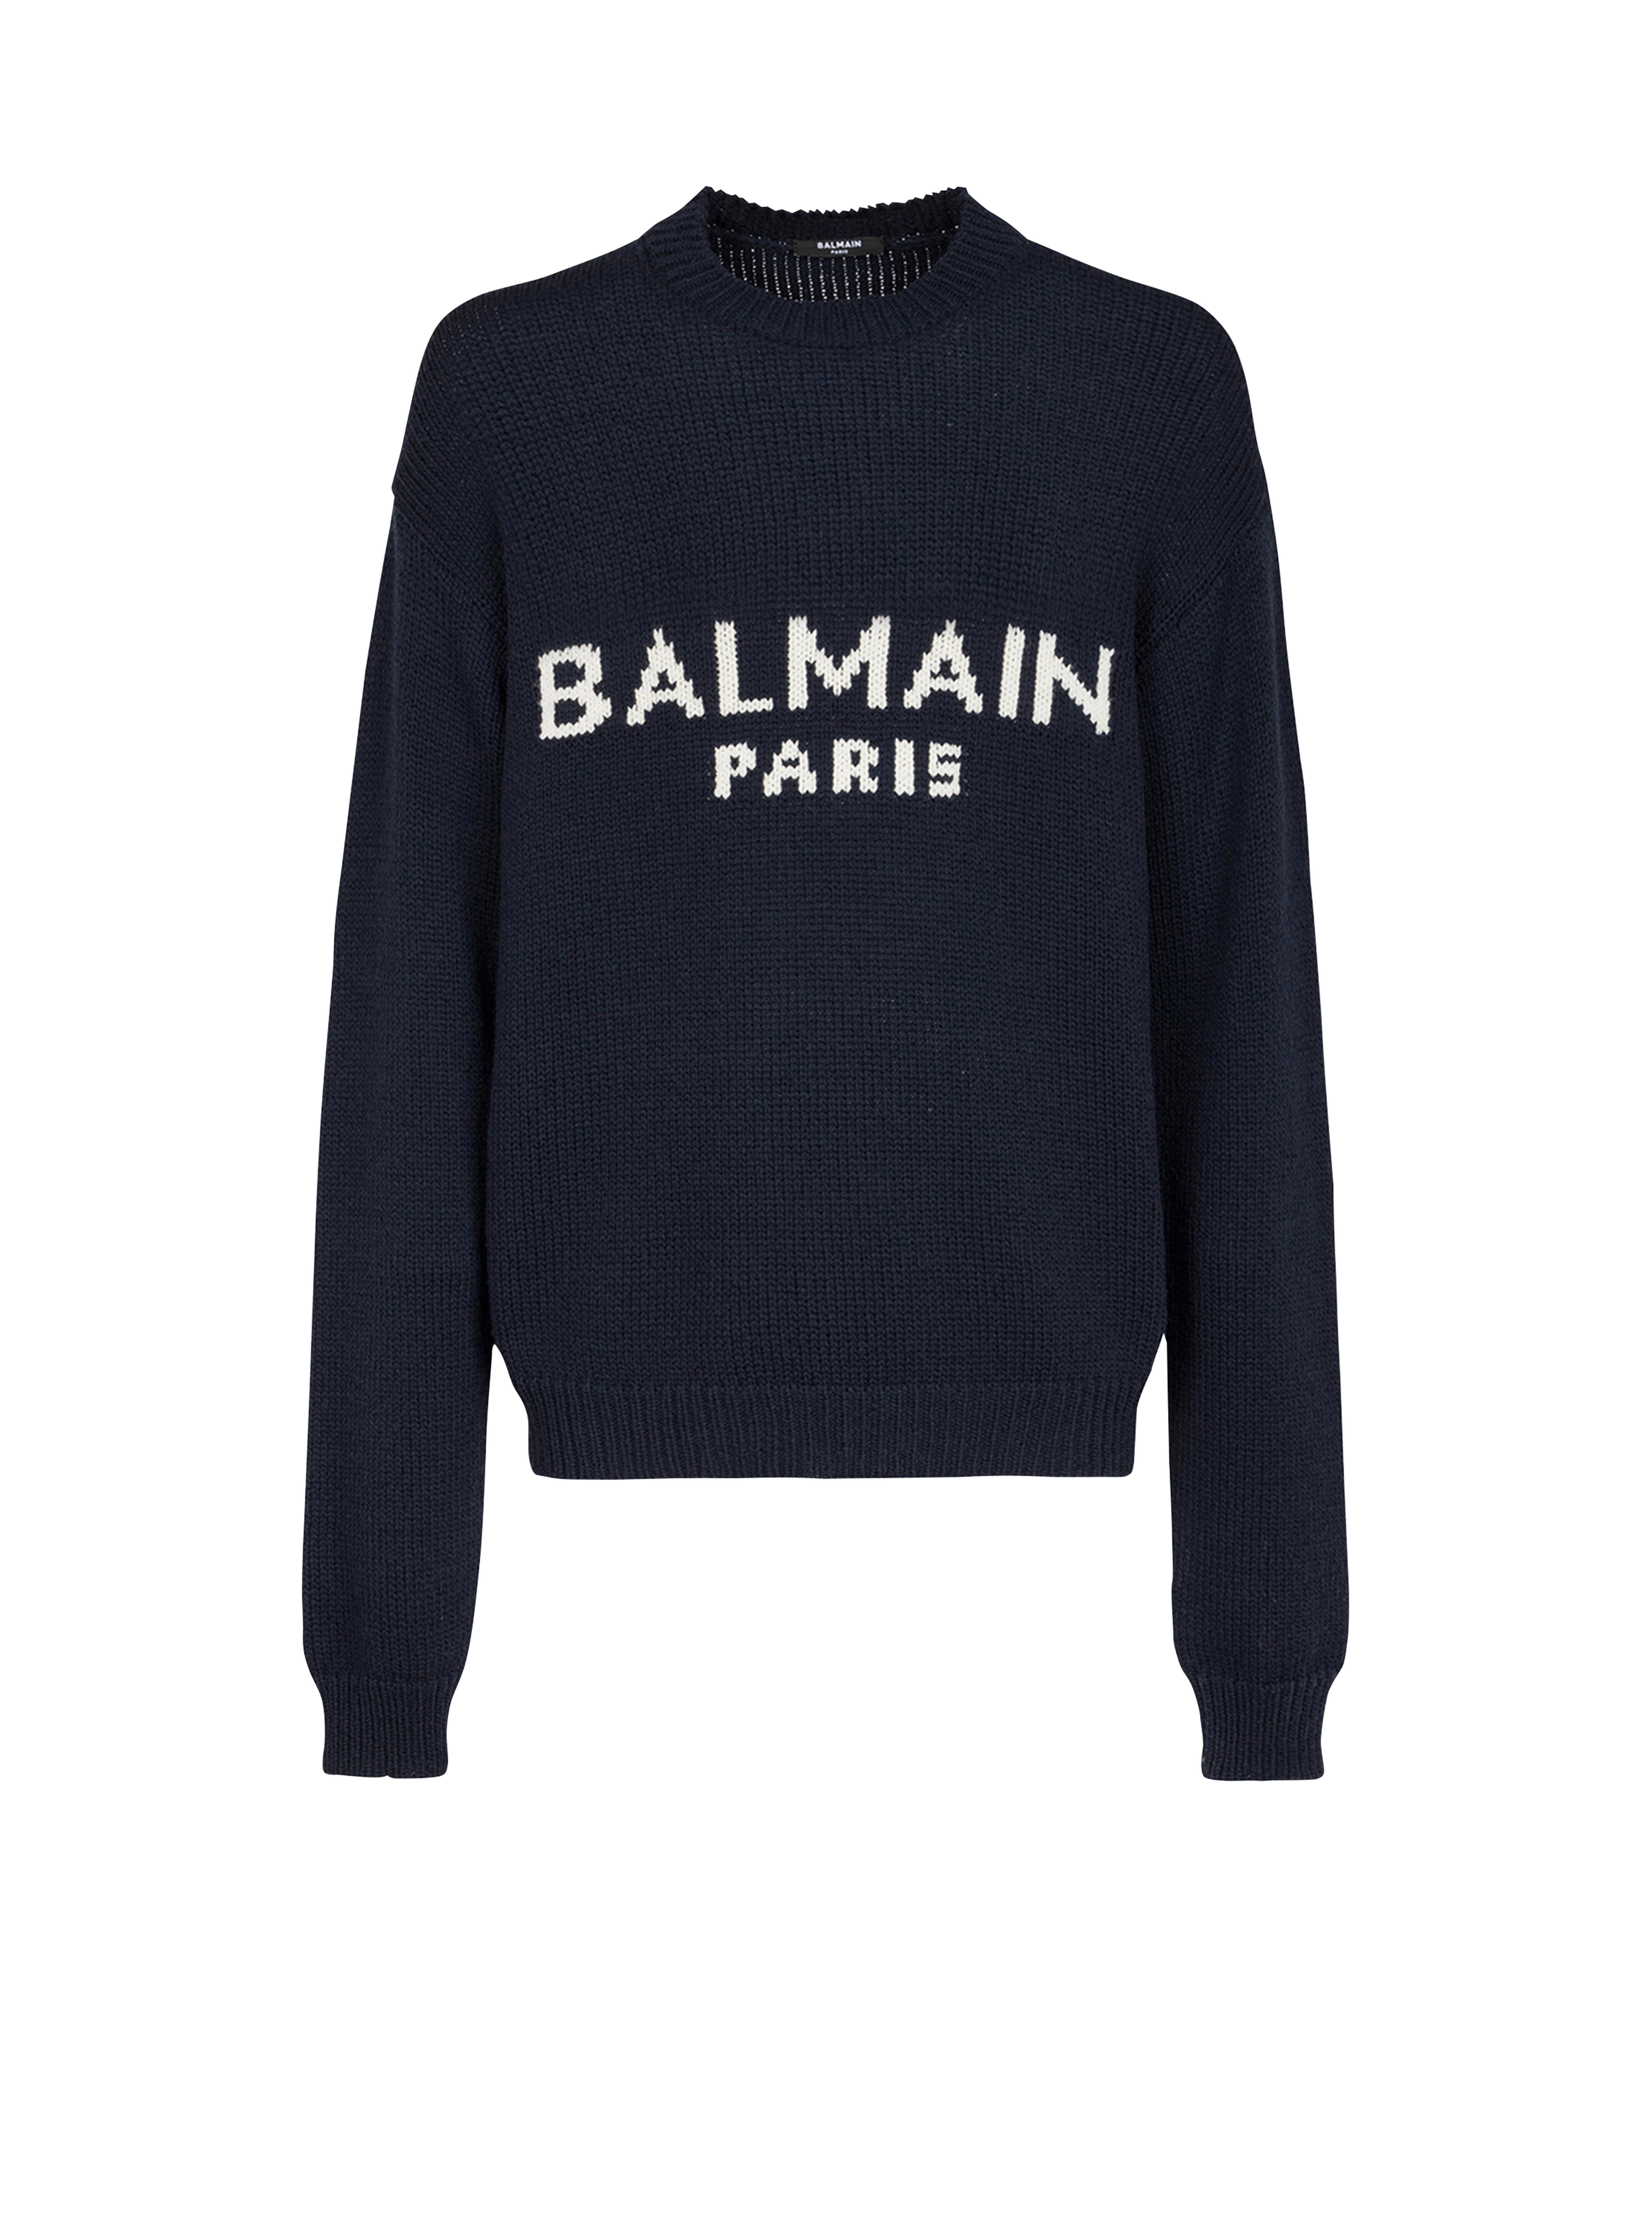 Wool sweater with Balmain Paris logo, black